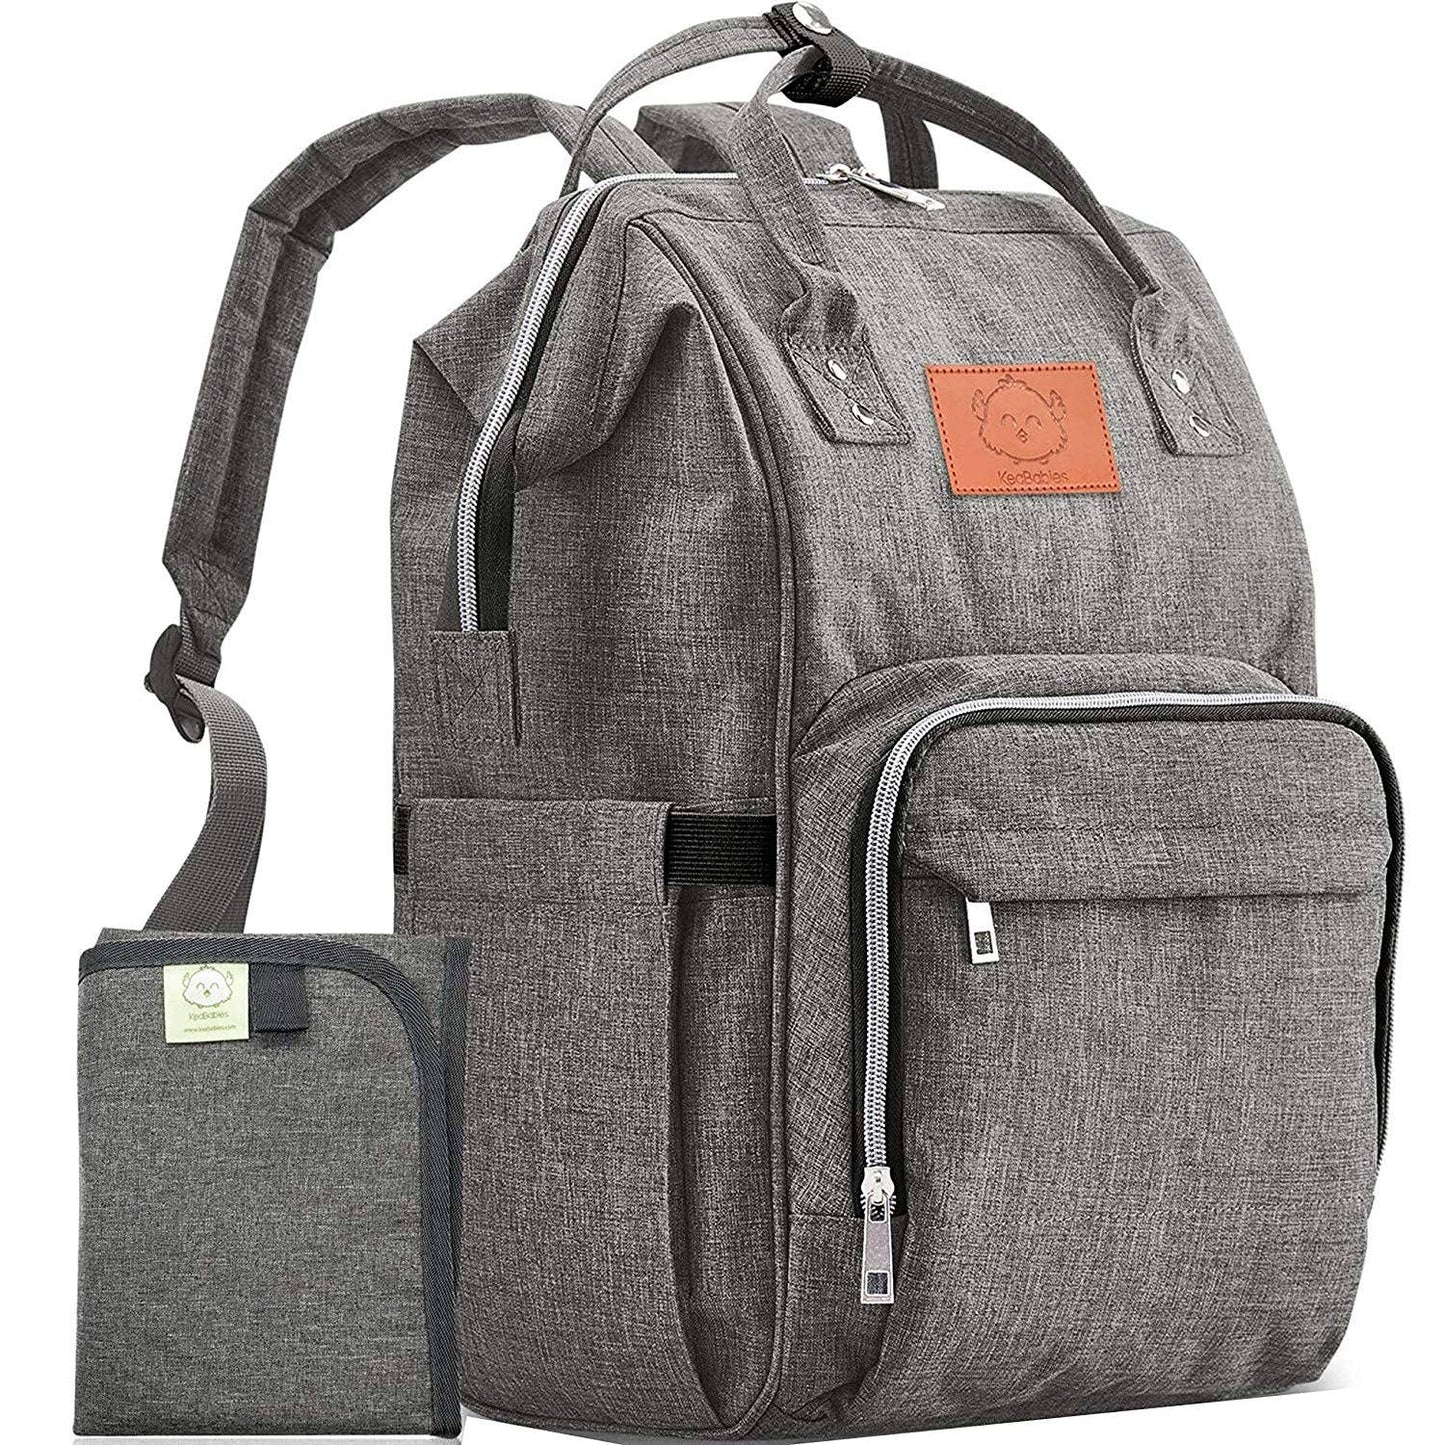 KeaBabies - KeaBabies Original Diaper Bag Backpack (Classic Gray) (7378801197234)